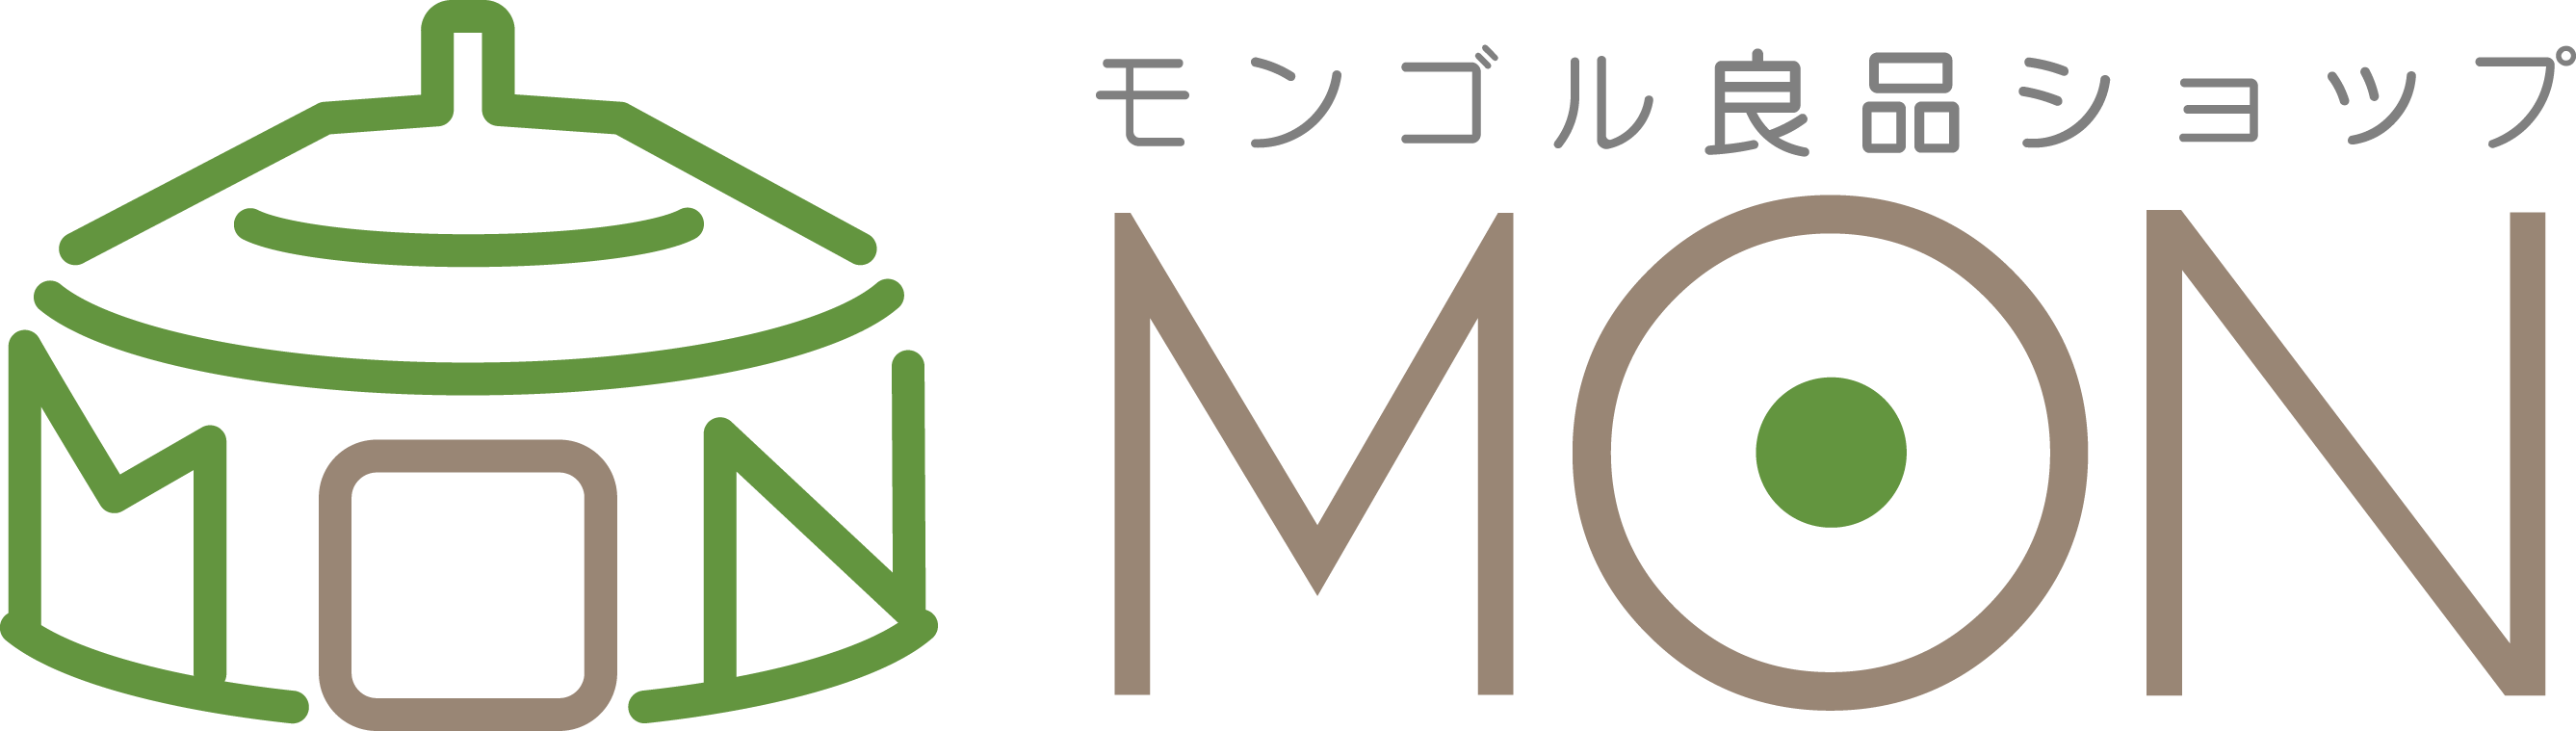 mon_logo02.png